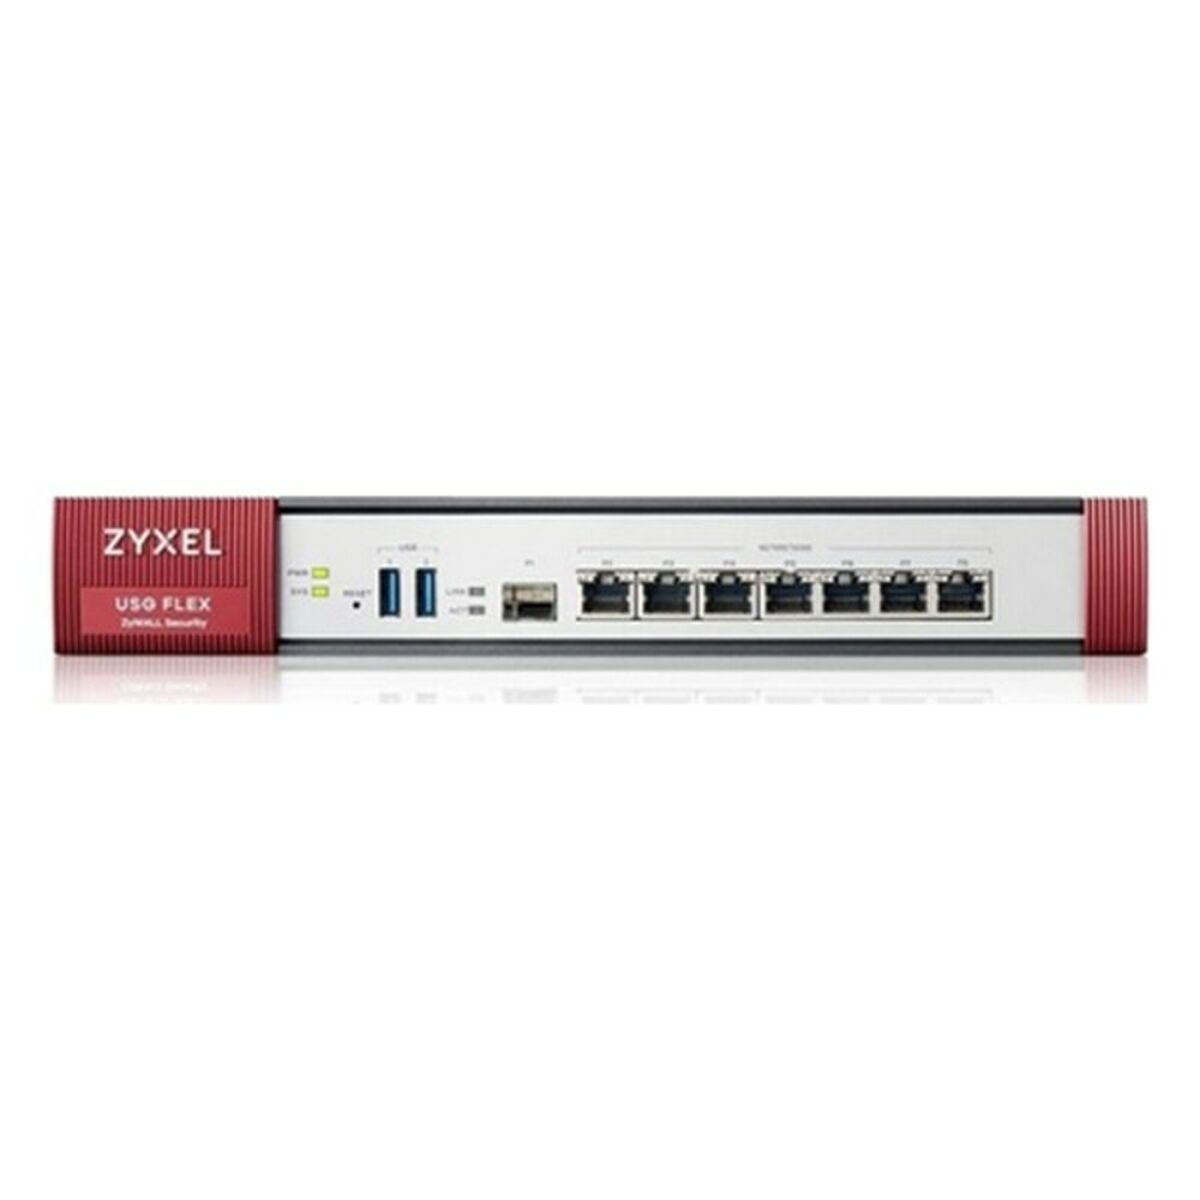 ZYXEL USGFLEX500-EU0102F Firewall